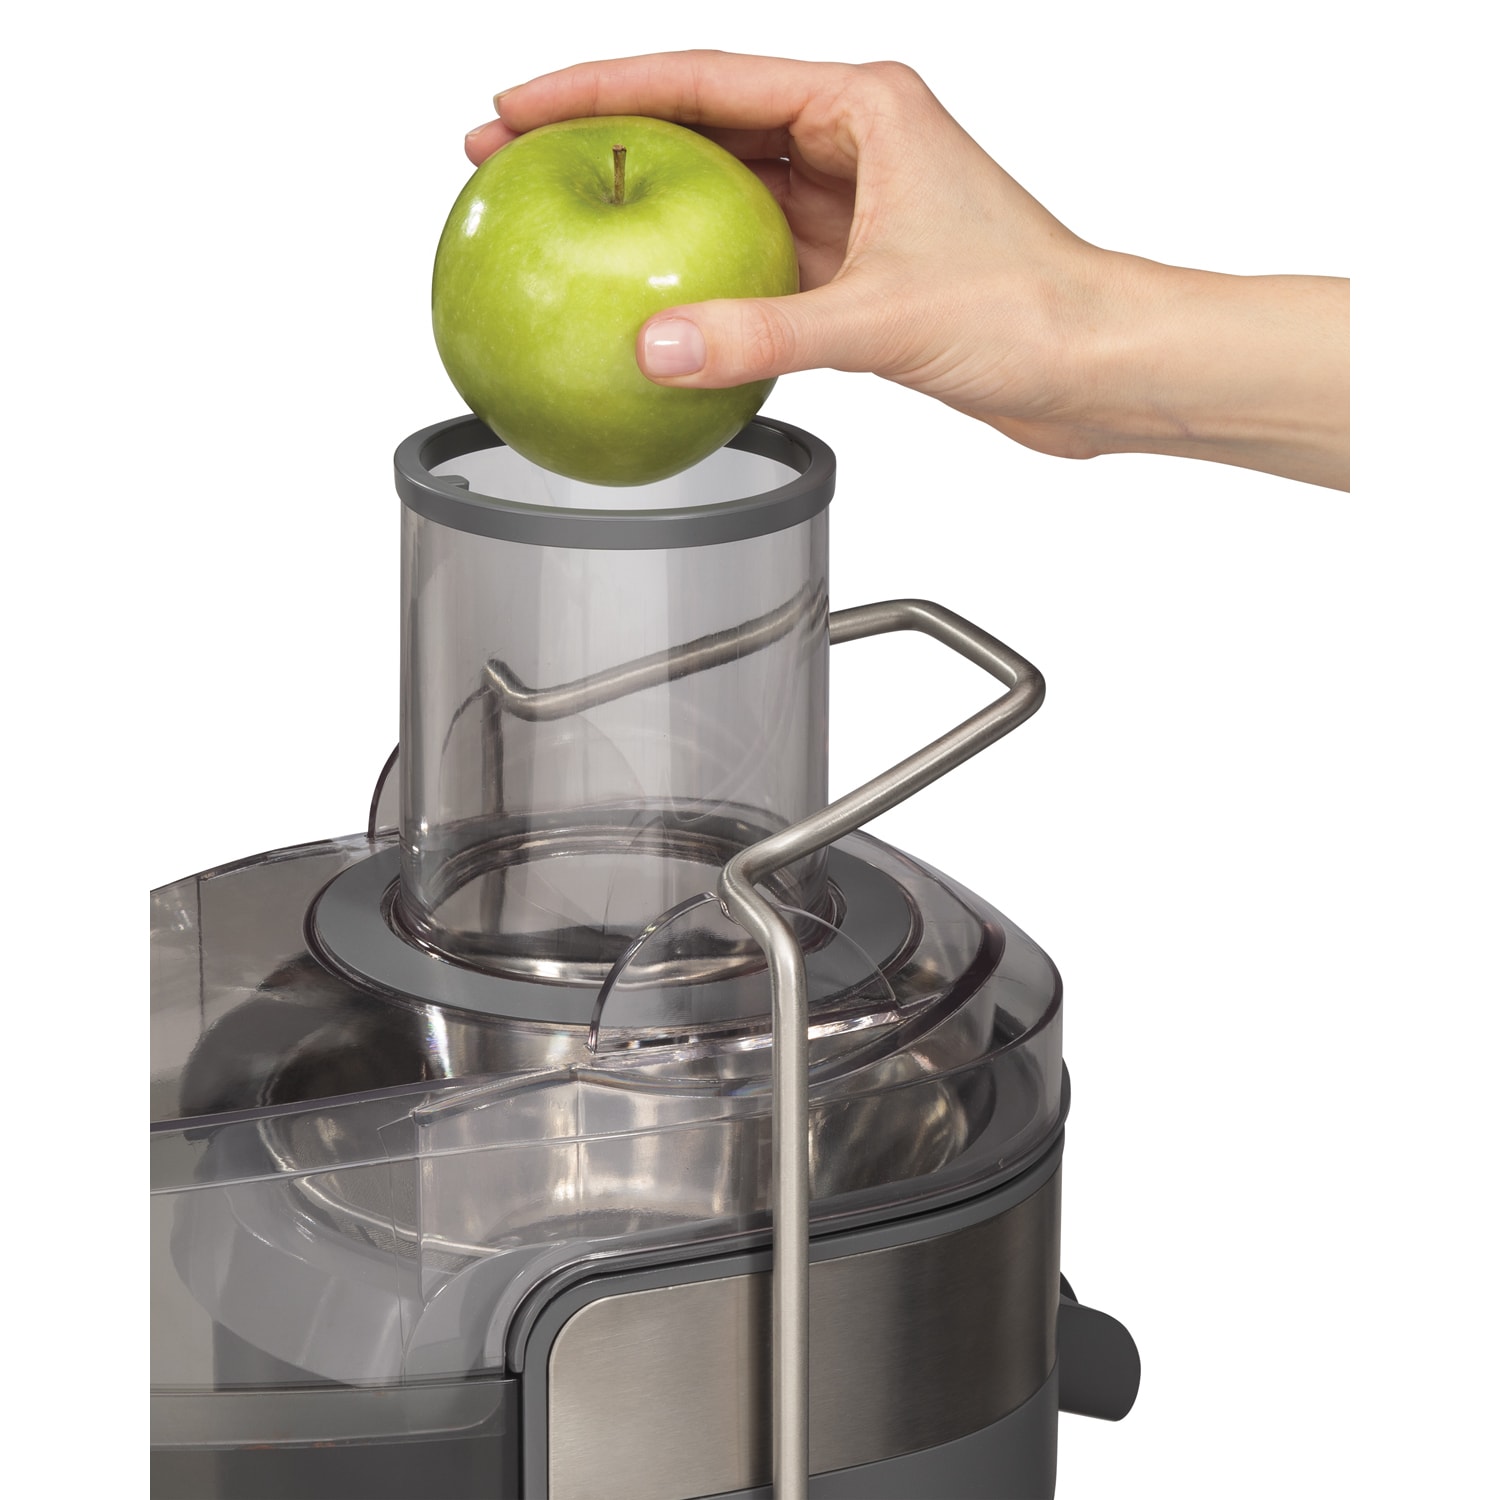 Соковыжималка для яблок купить. Соковыжималка Juice Extractor model:BT-203. Соковыжималка центробежная Нептун-м кажи 332215.002. Bosch Juice Extractor. Соковыжималка центрифуга для целых яблок.